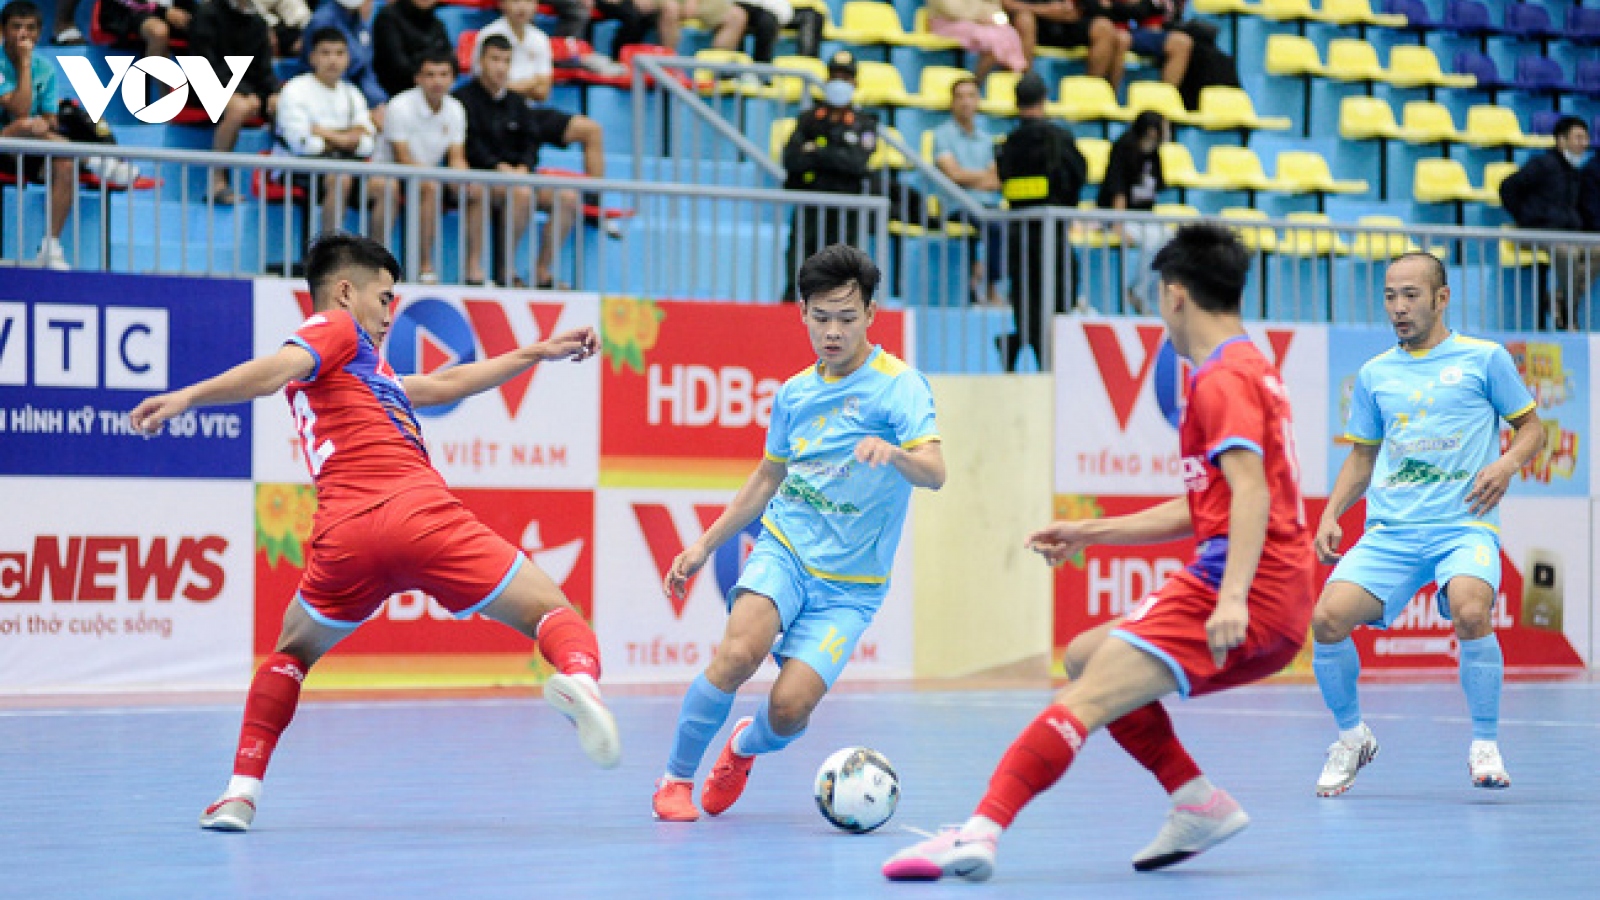 Xem trực tiếp Sài Gòn FC vs Savinest Khánh Hoà giải Futsal HDBank VĐQG 2022